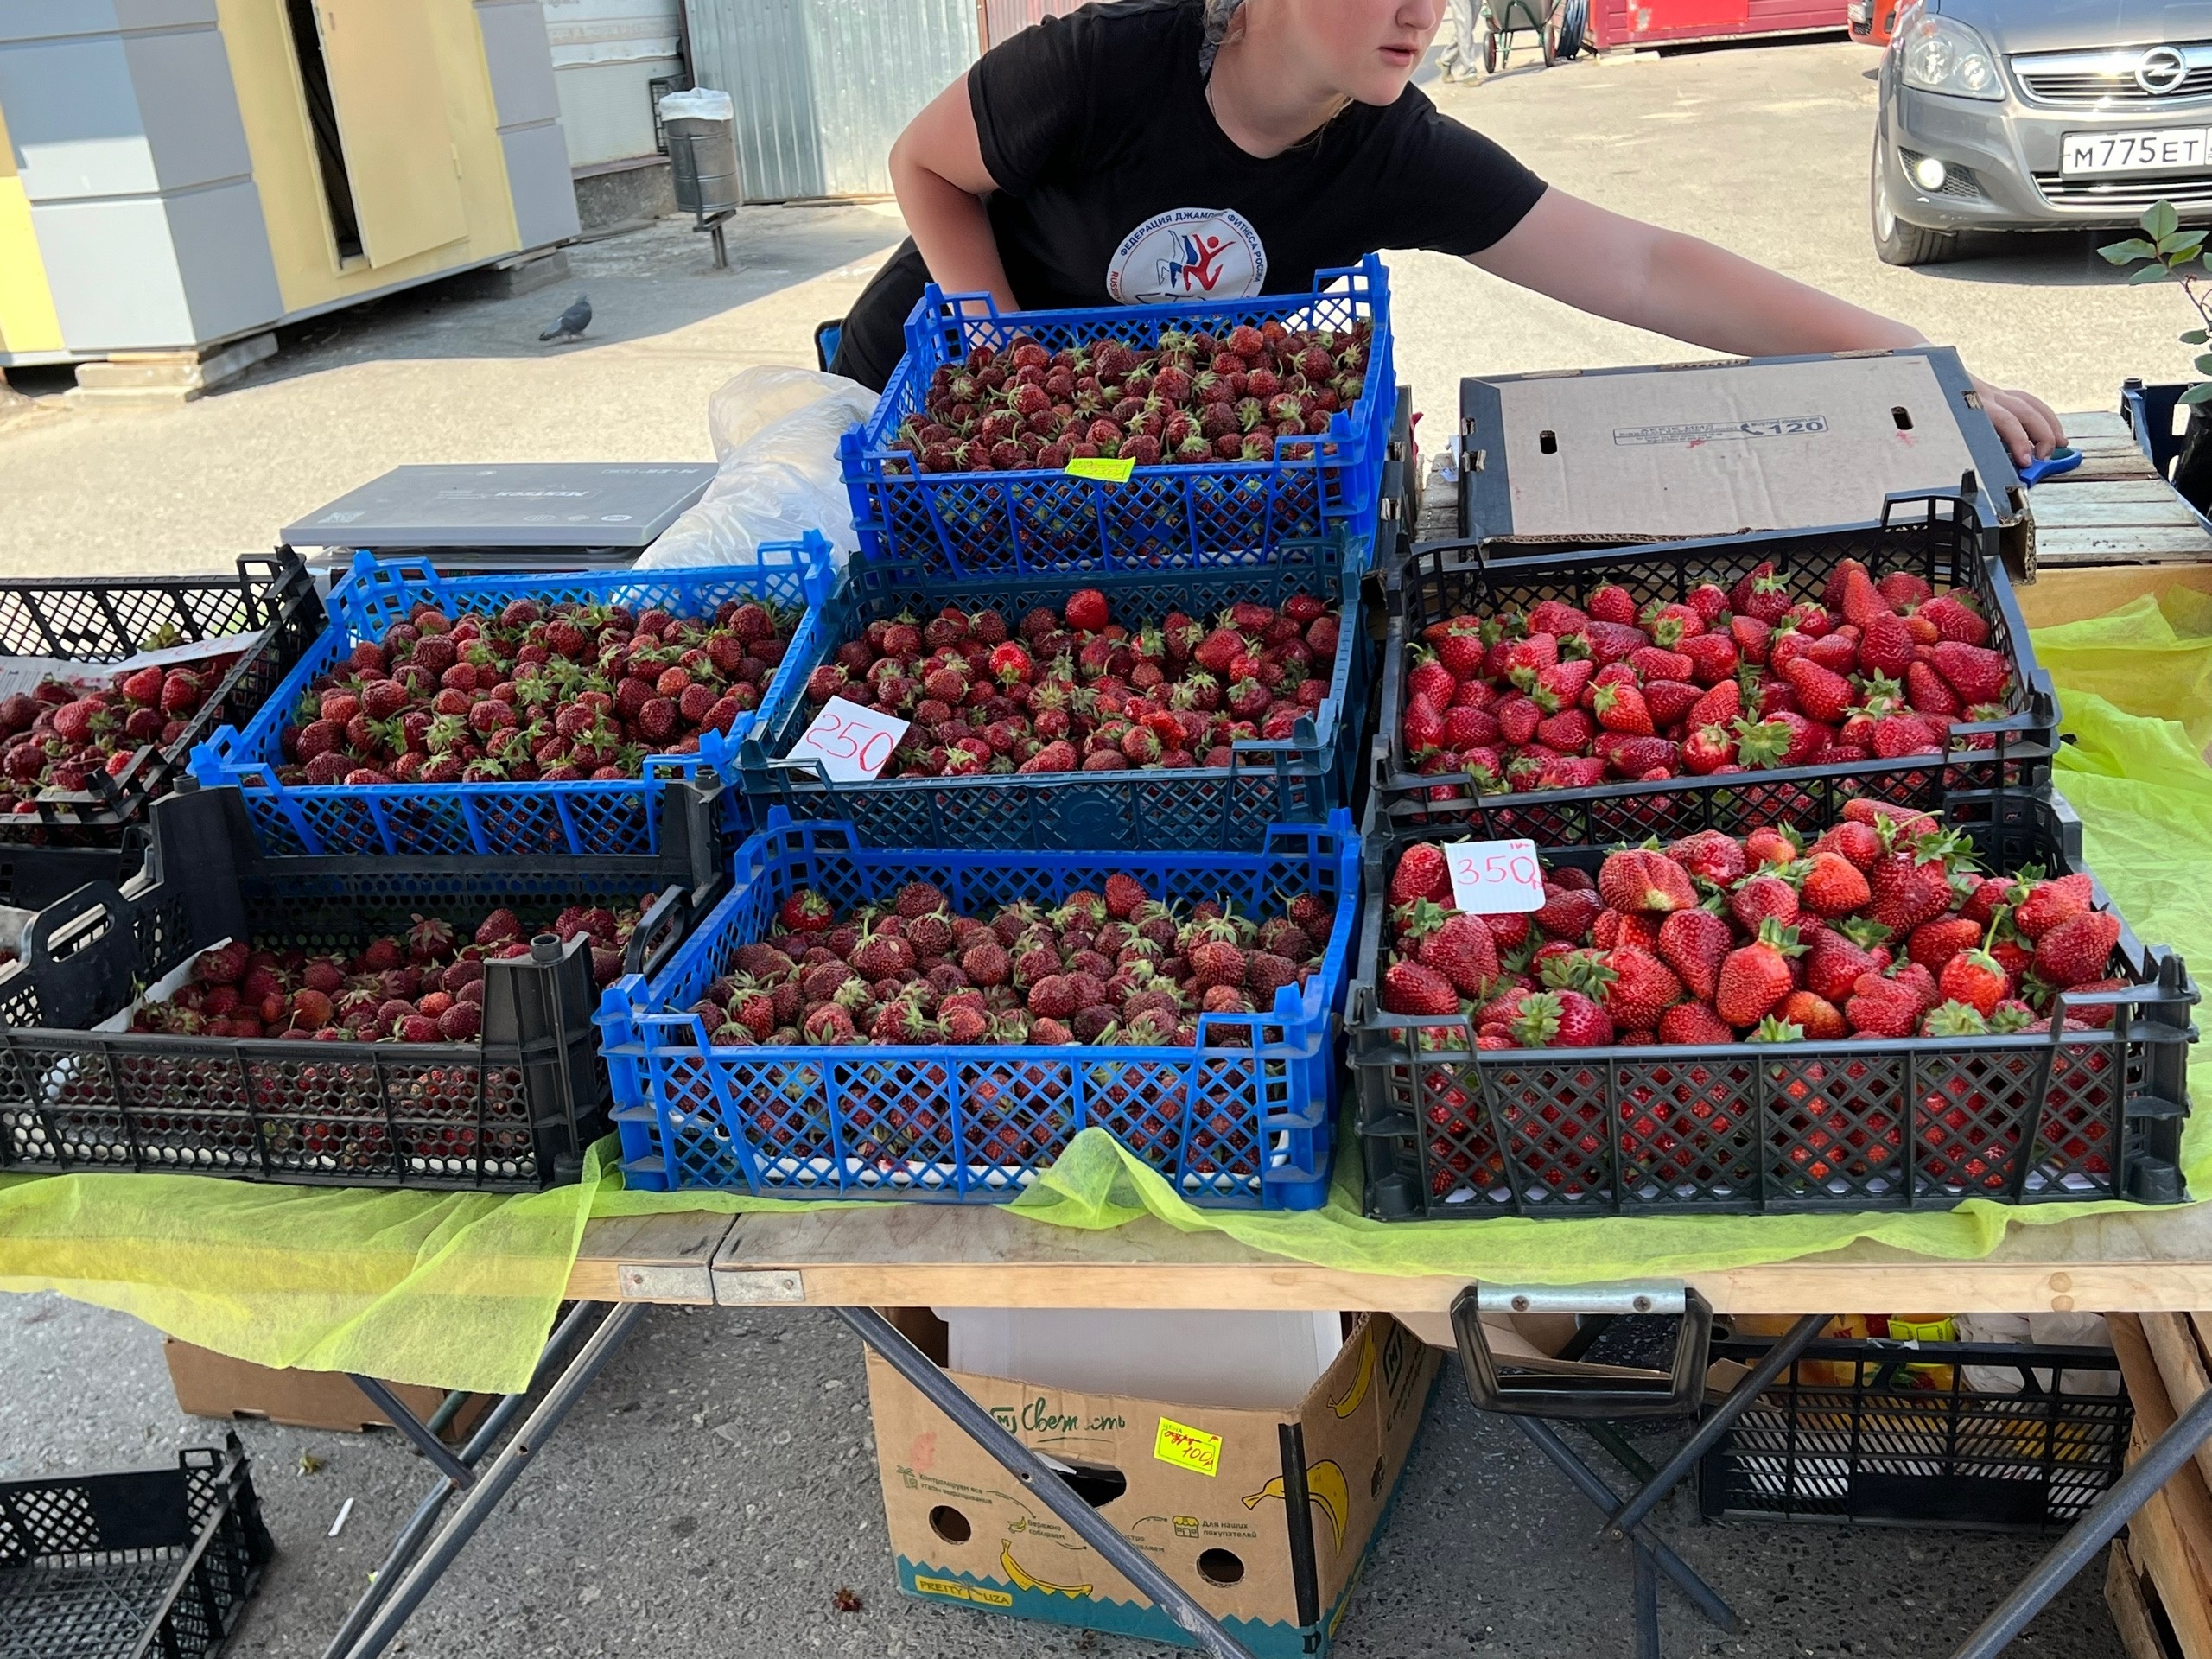 "Огромные чистые ягоды, хоть на продажу": опытные огородники молчат об этом удобрении